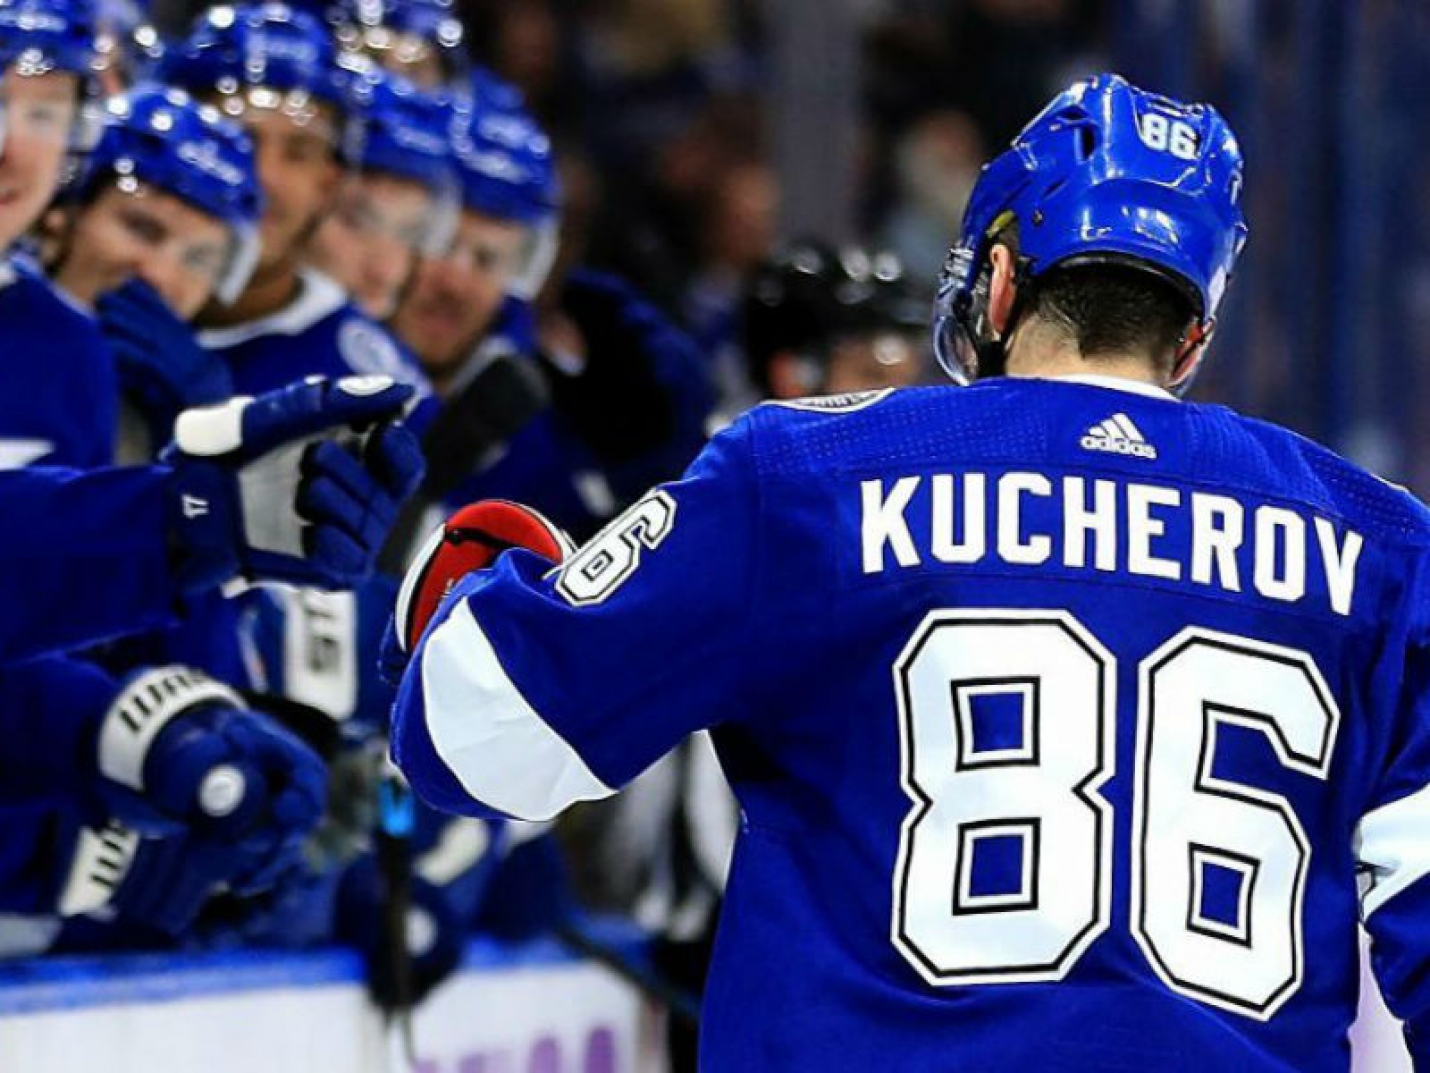 Кучеров сравнялся с Буре в списке лучших бомбардиров плей-офф НХЛ среди российских хоккеистов